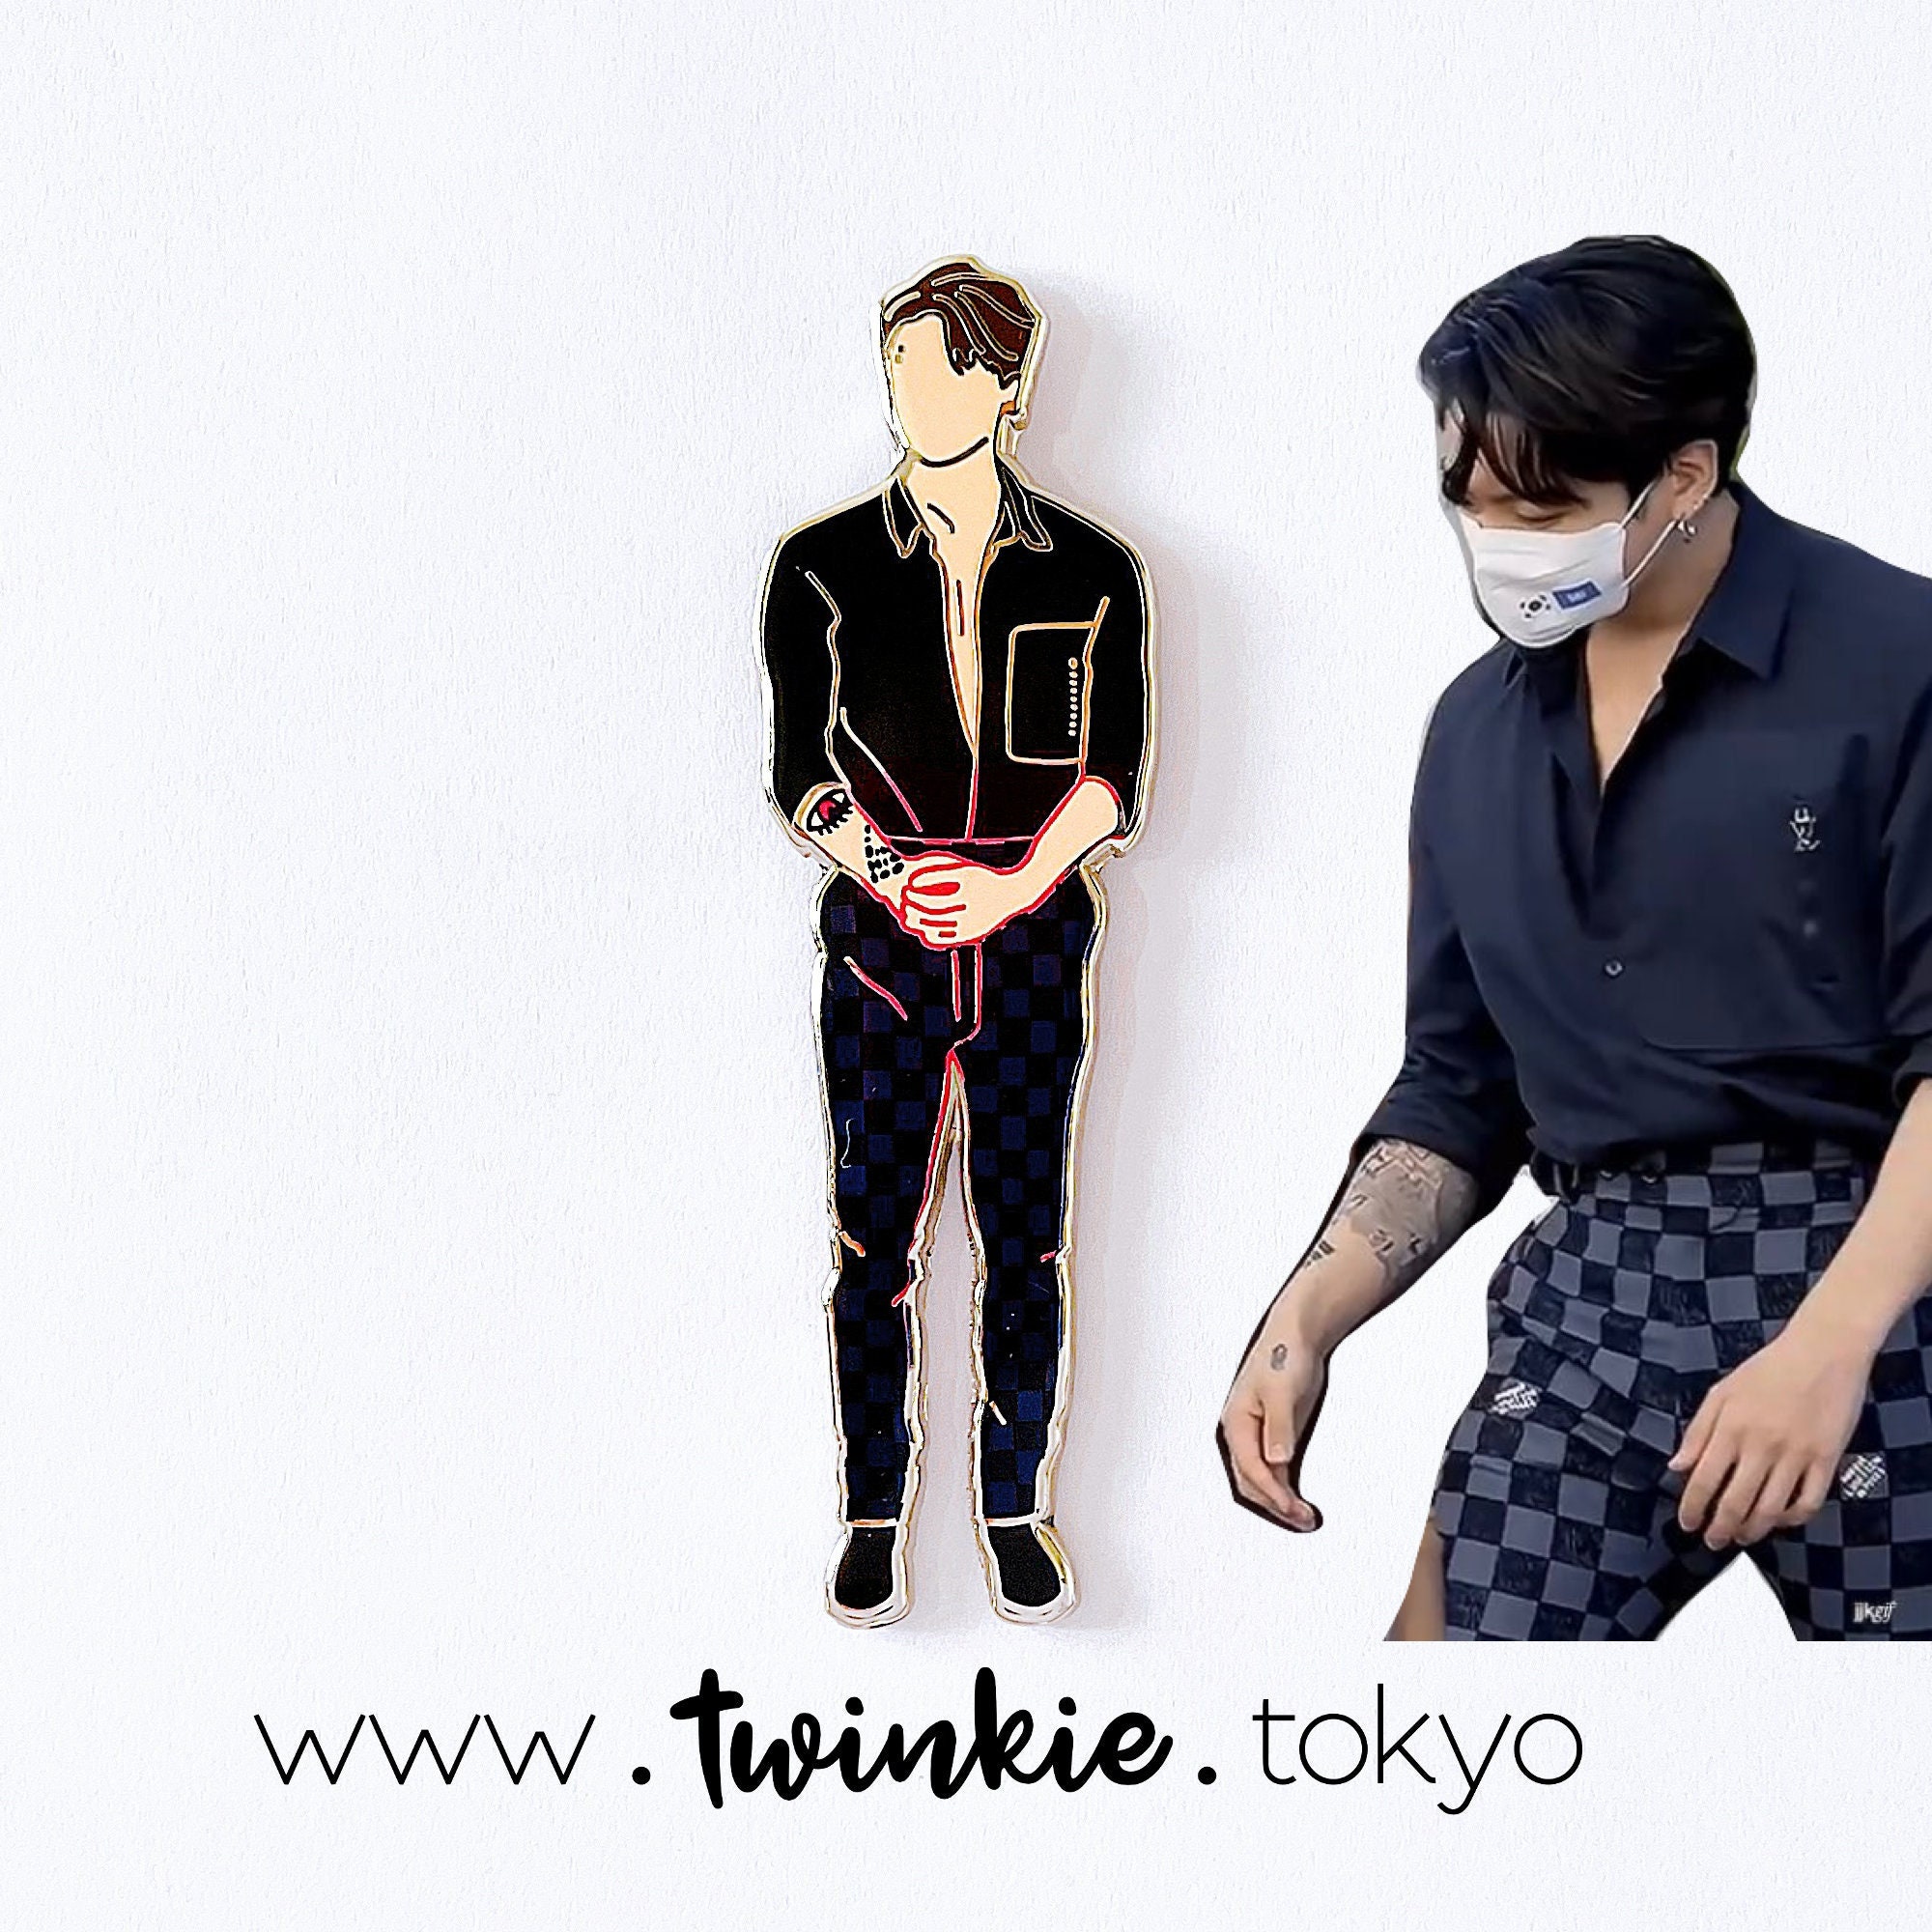 BTS Jungkook Checkered Pants Pin Twinkie Tokyo PTD 